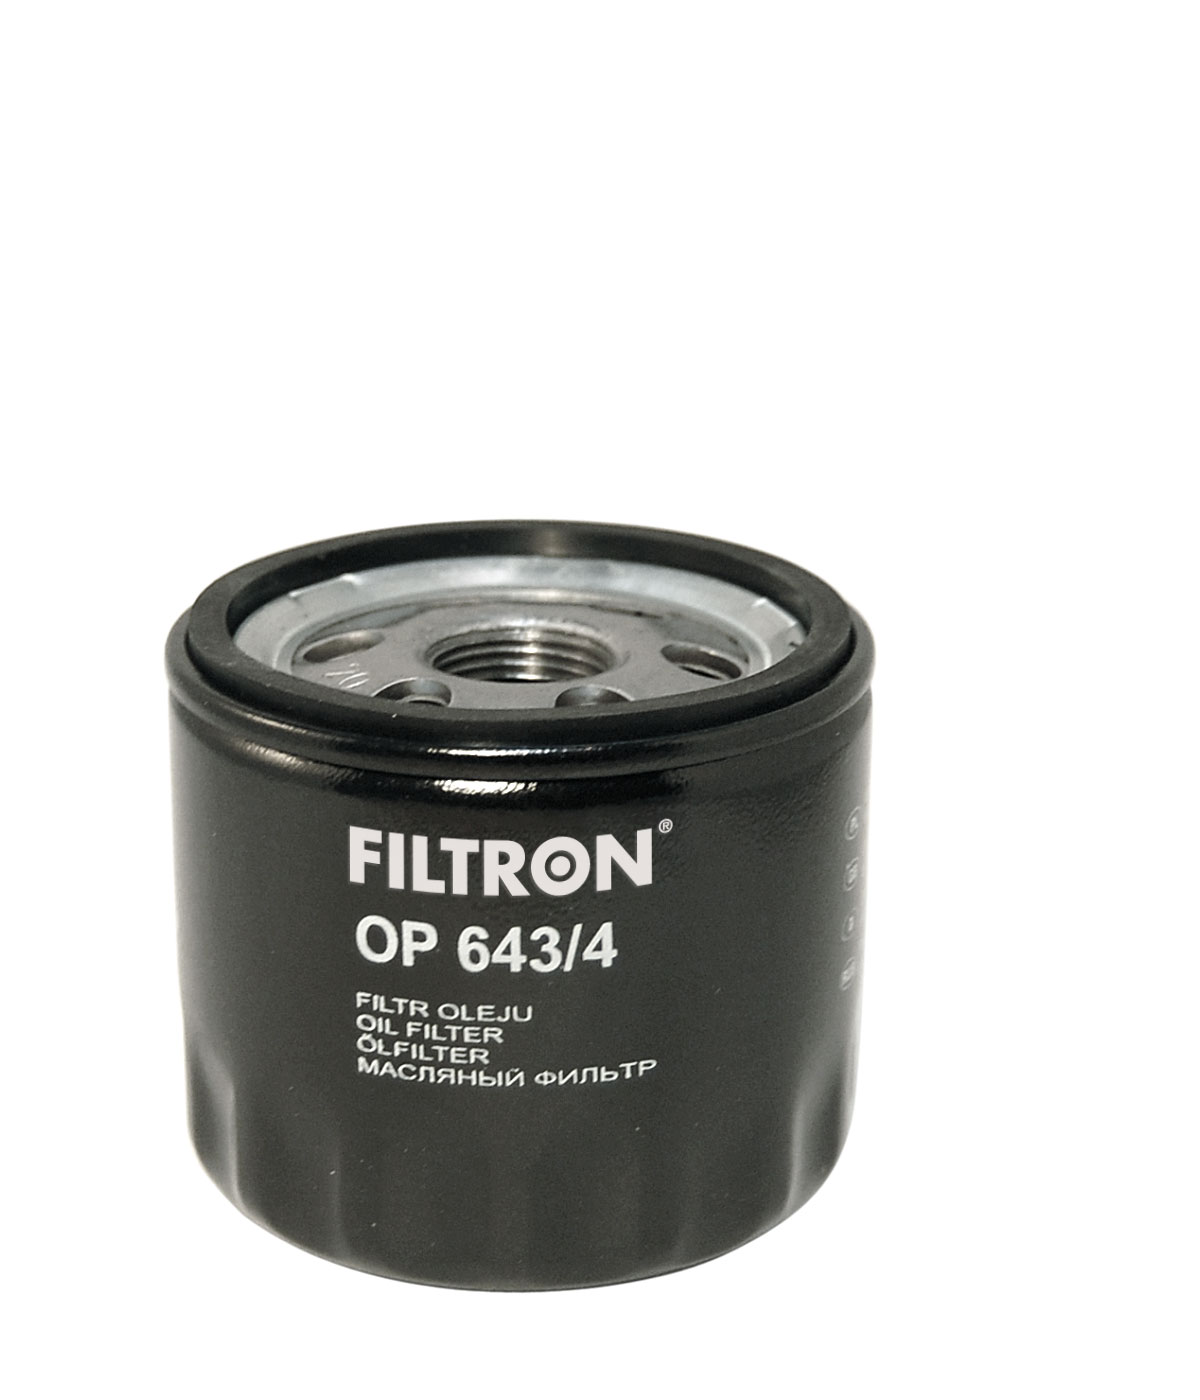 Filtr oleju FILTRON OP643/4